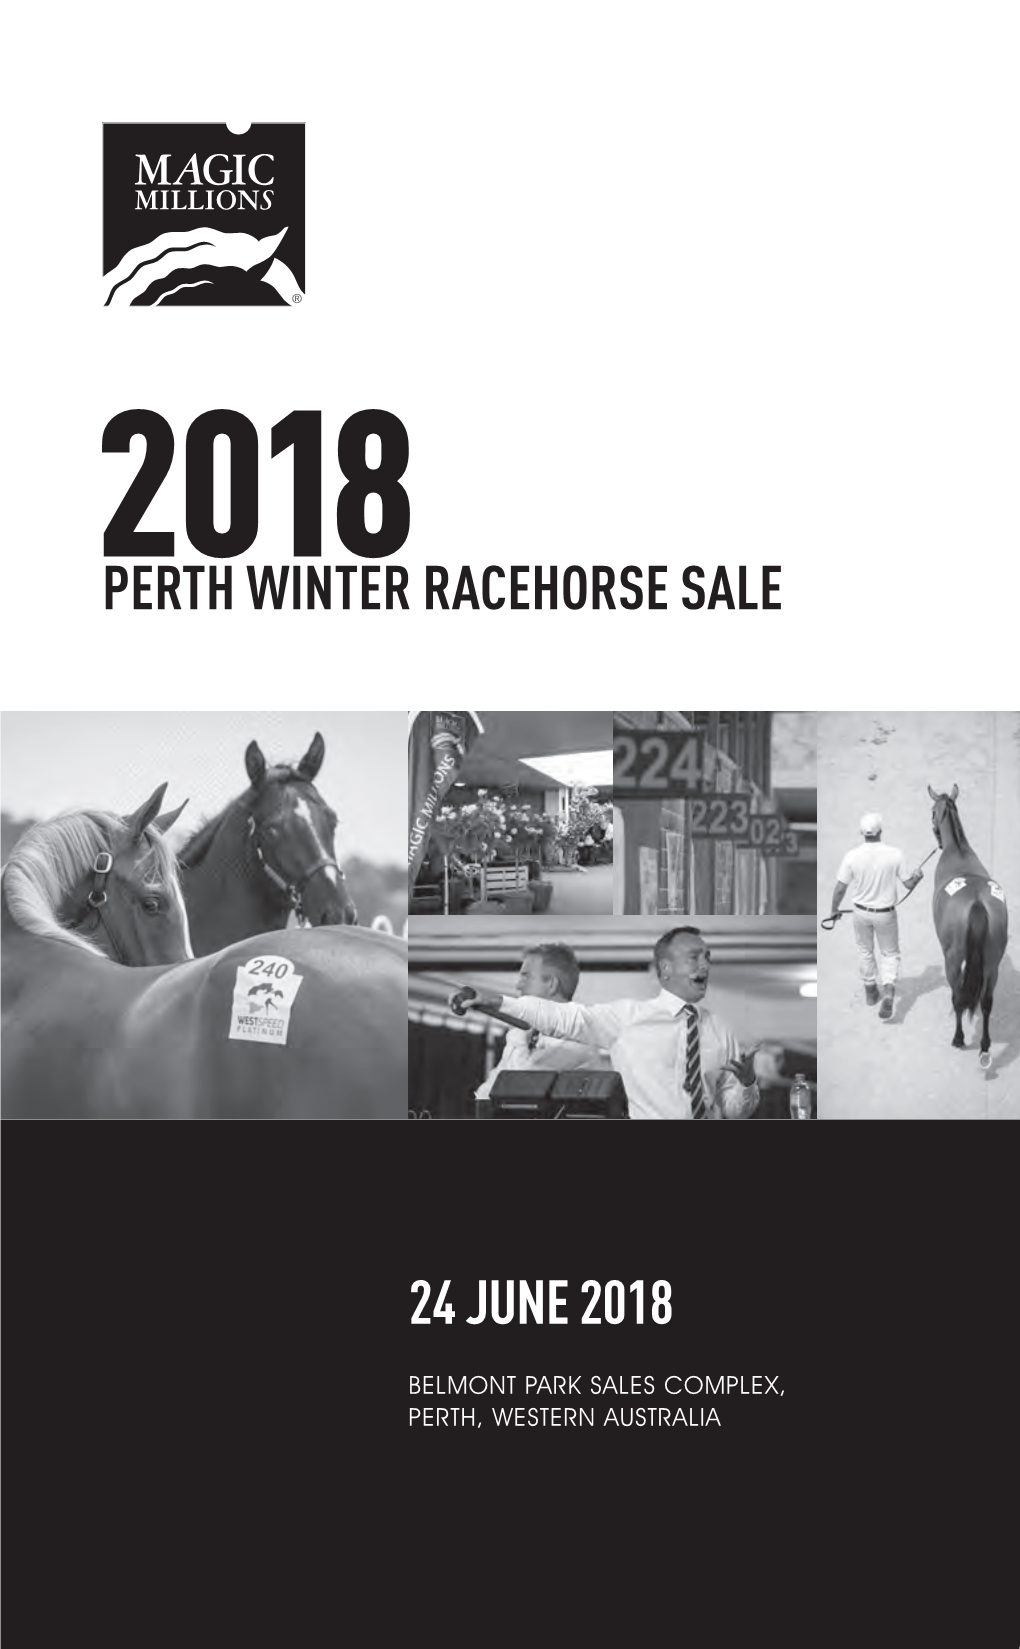 Racehorse Sale